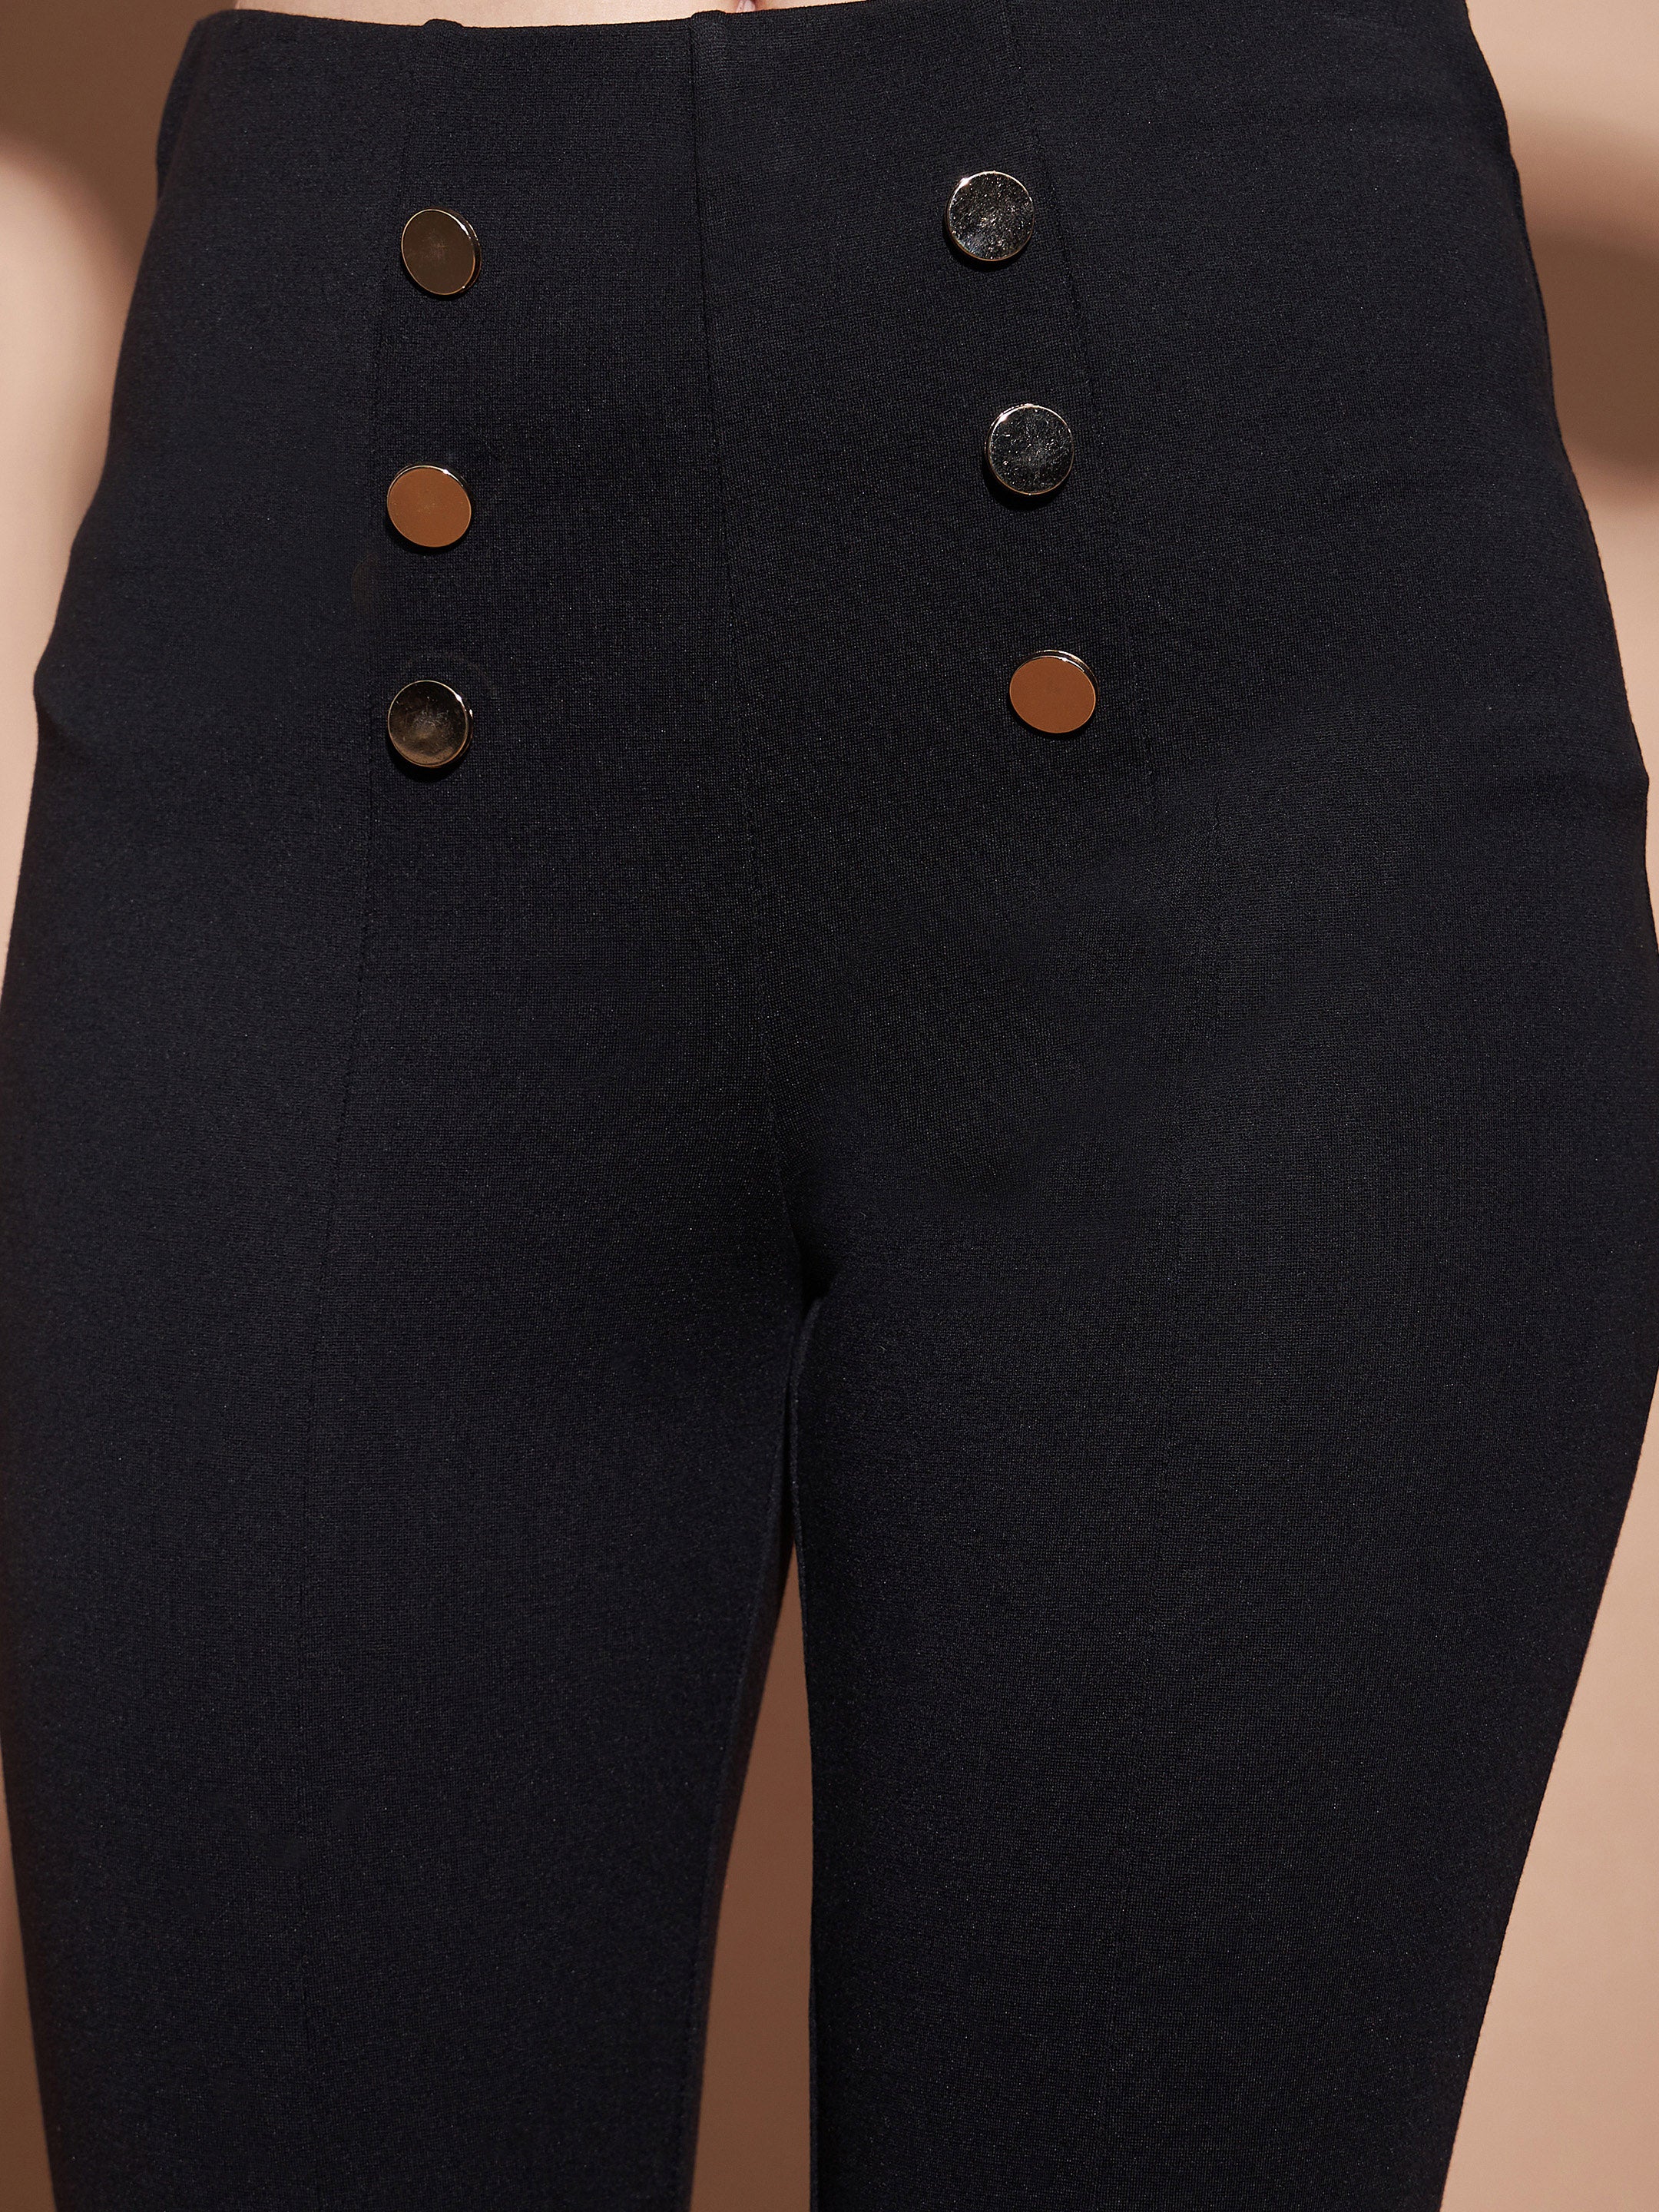 Women's Black High Waist Gold Show Buttons Pants - Lyush